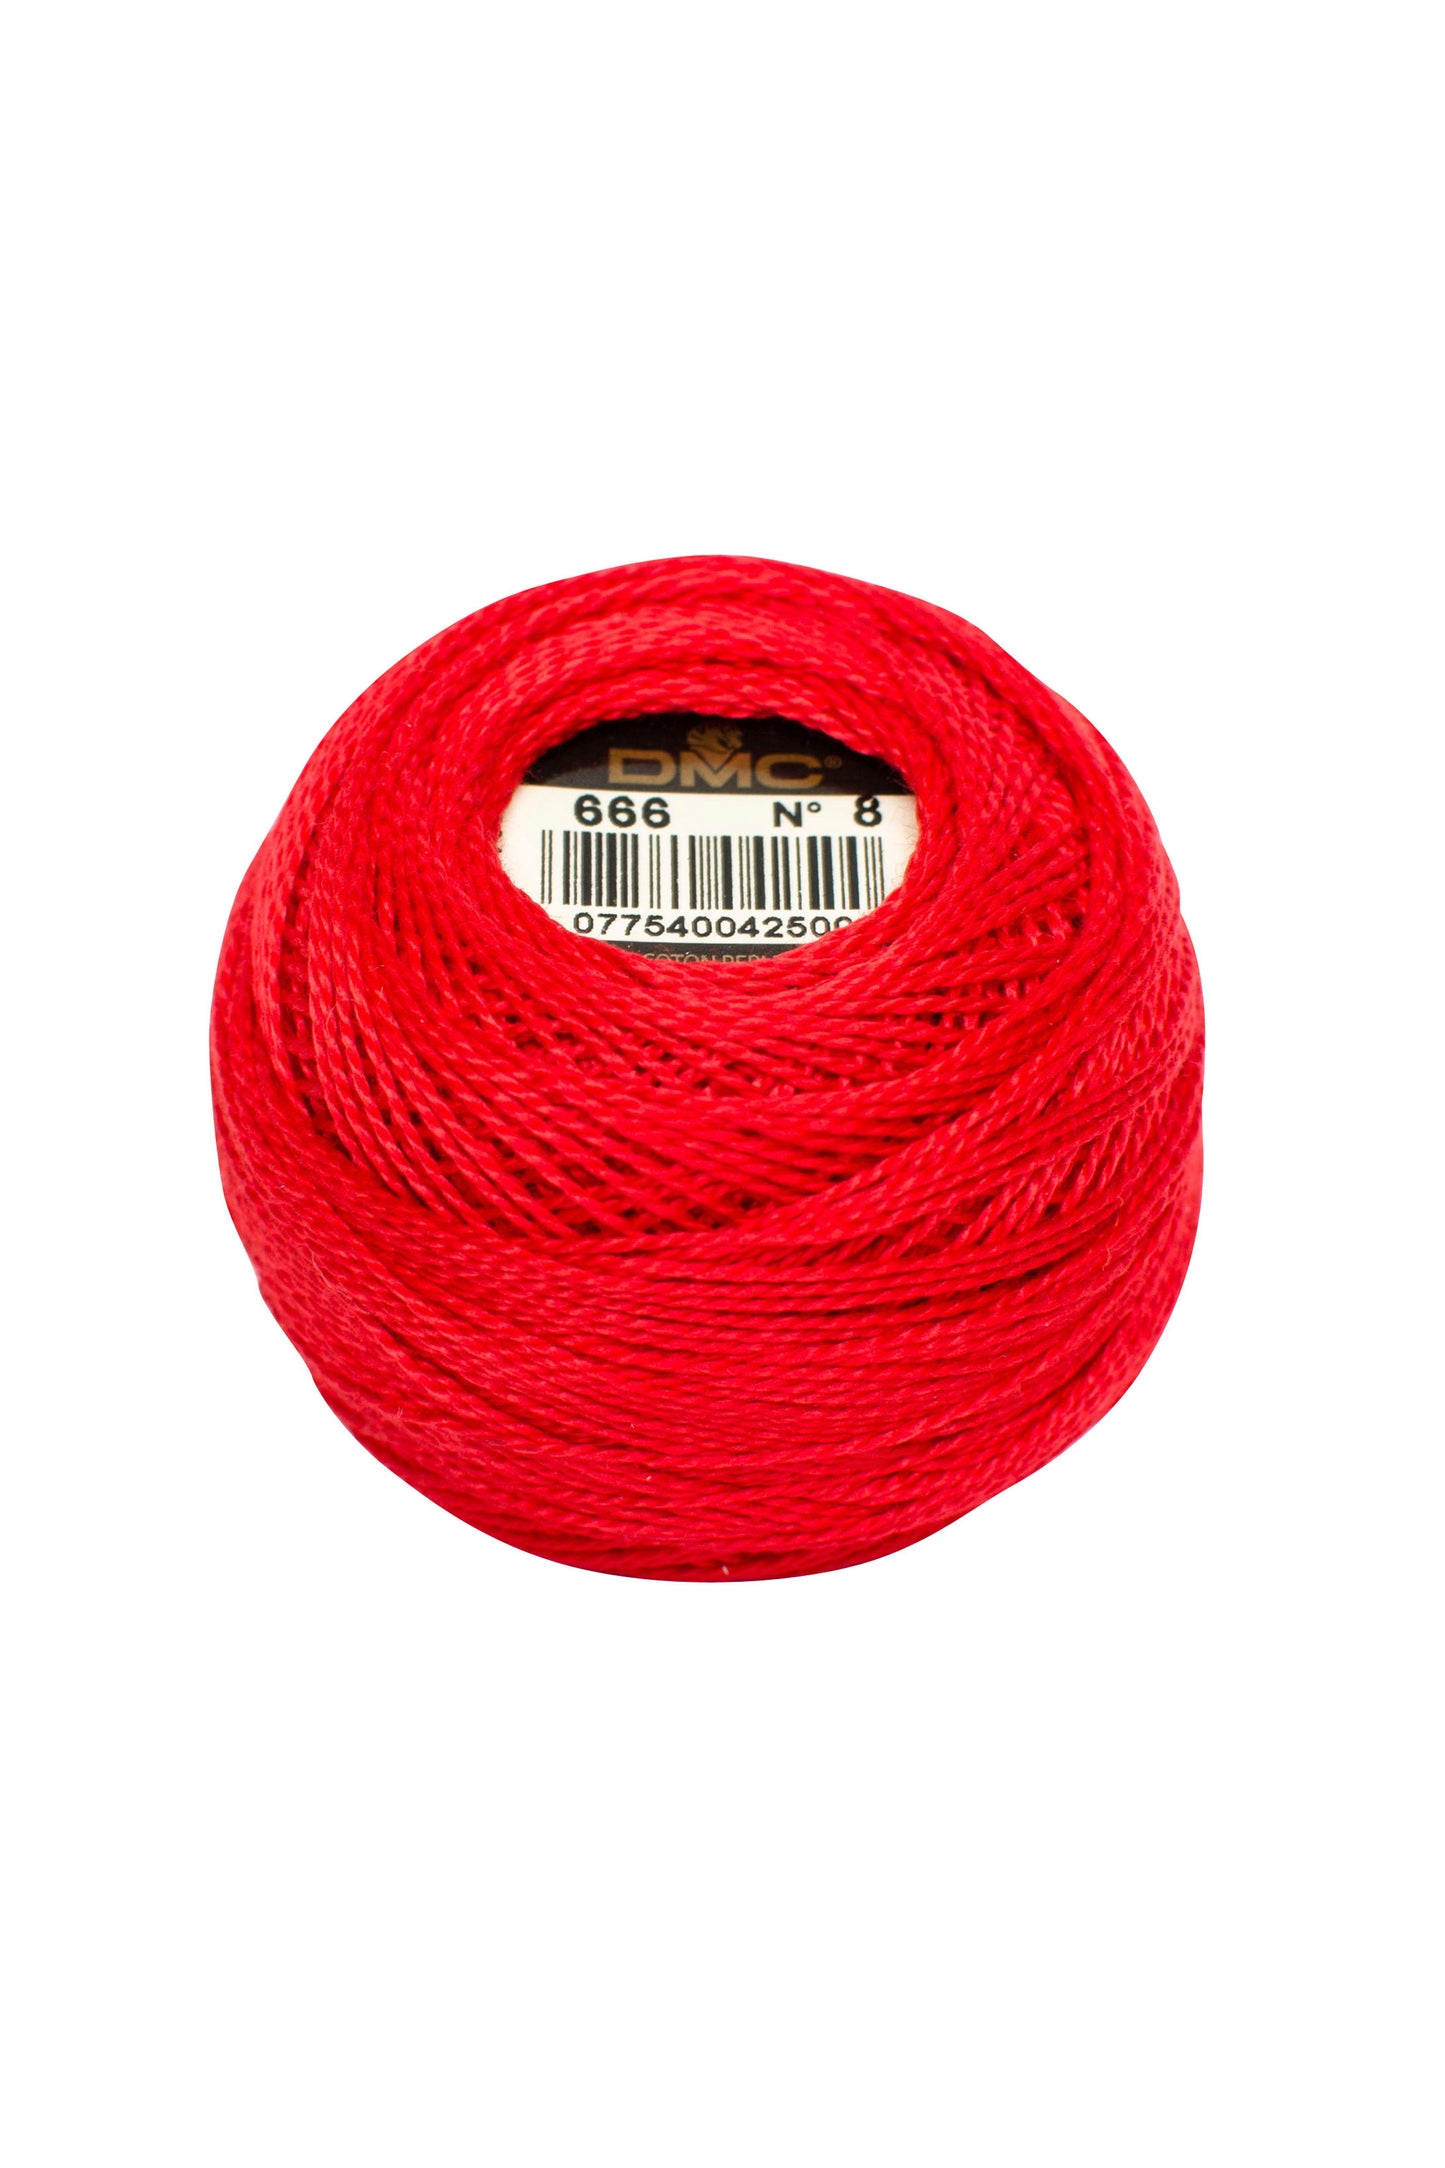 666 Bright Red - DMC #8 Perle Cotton Ball